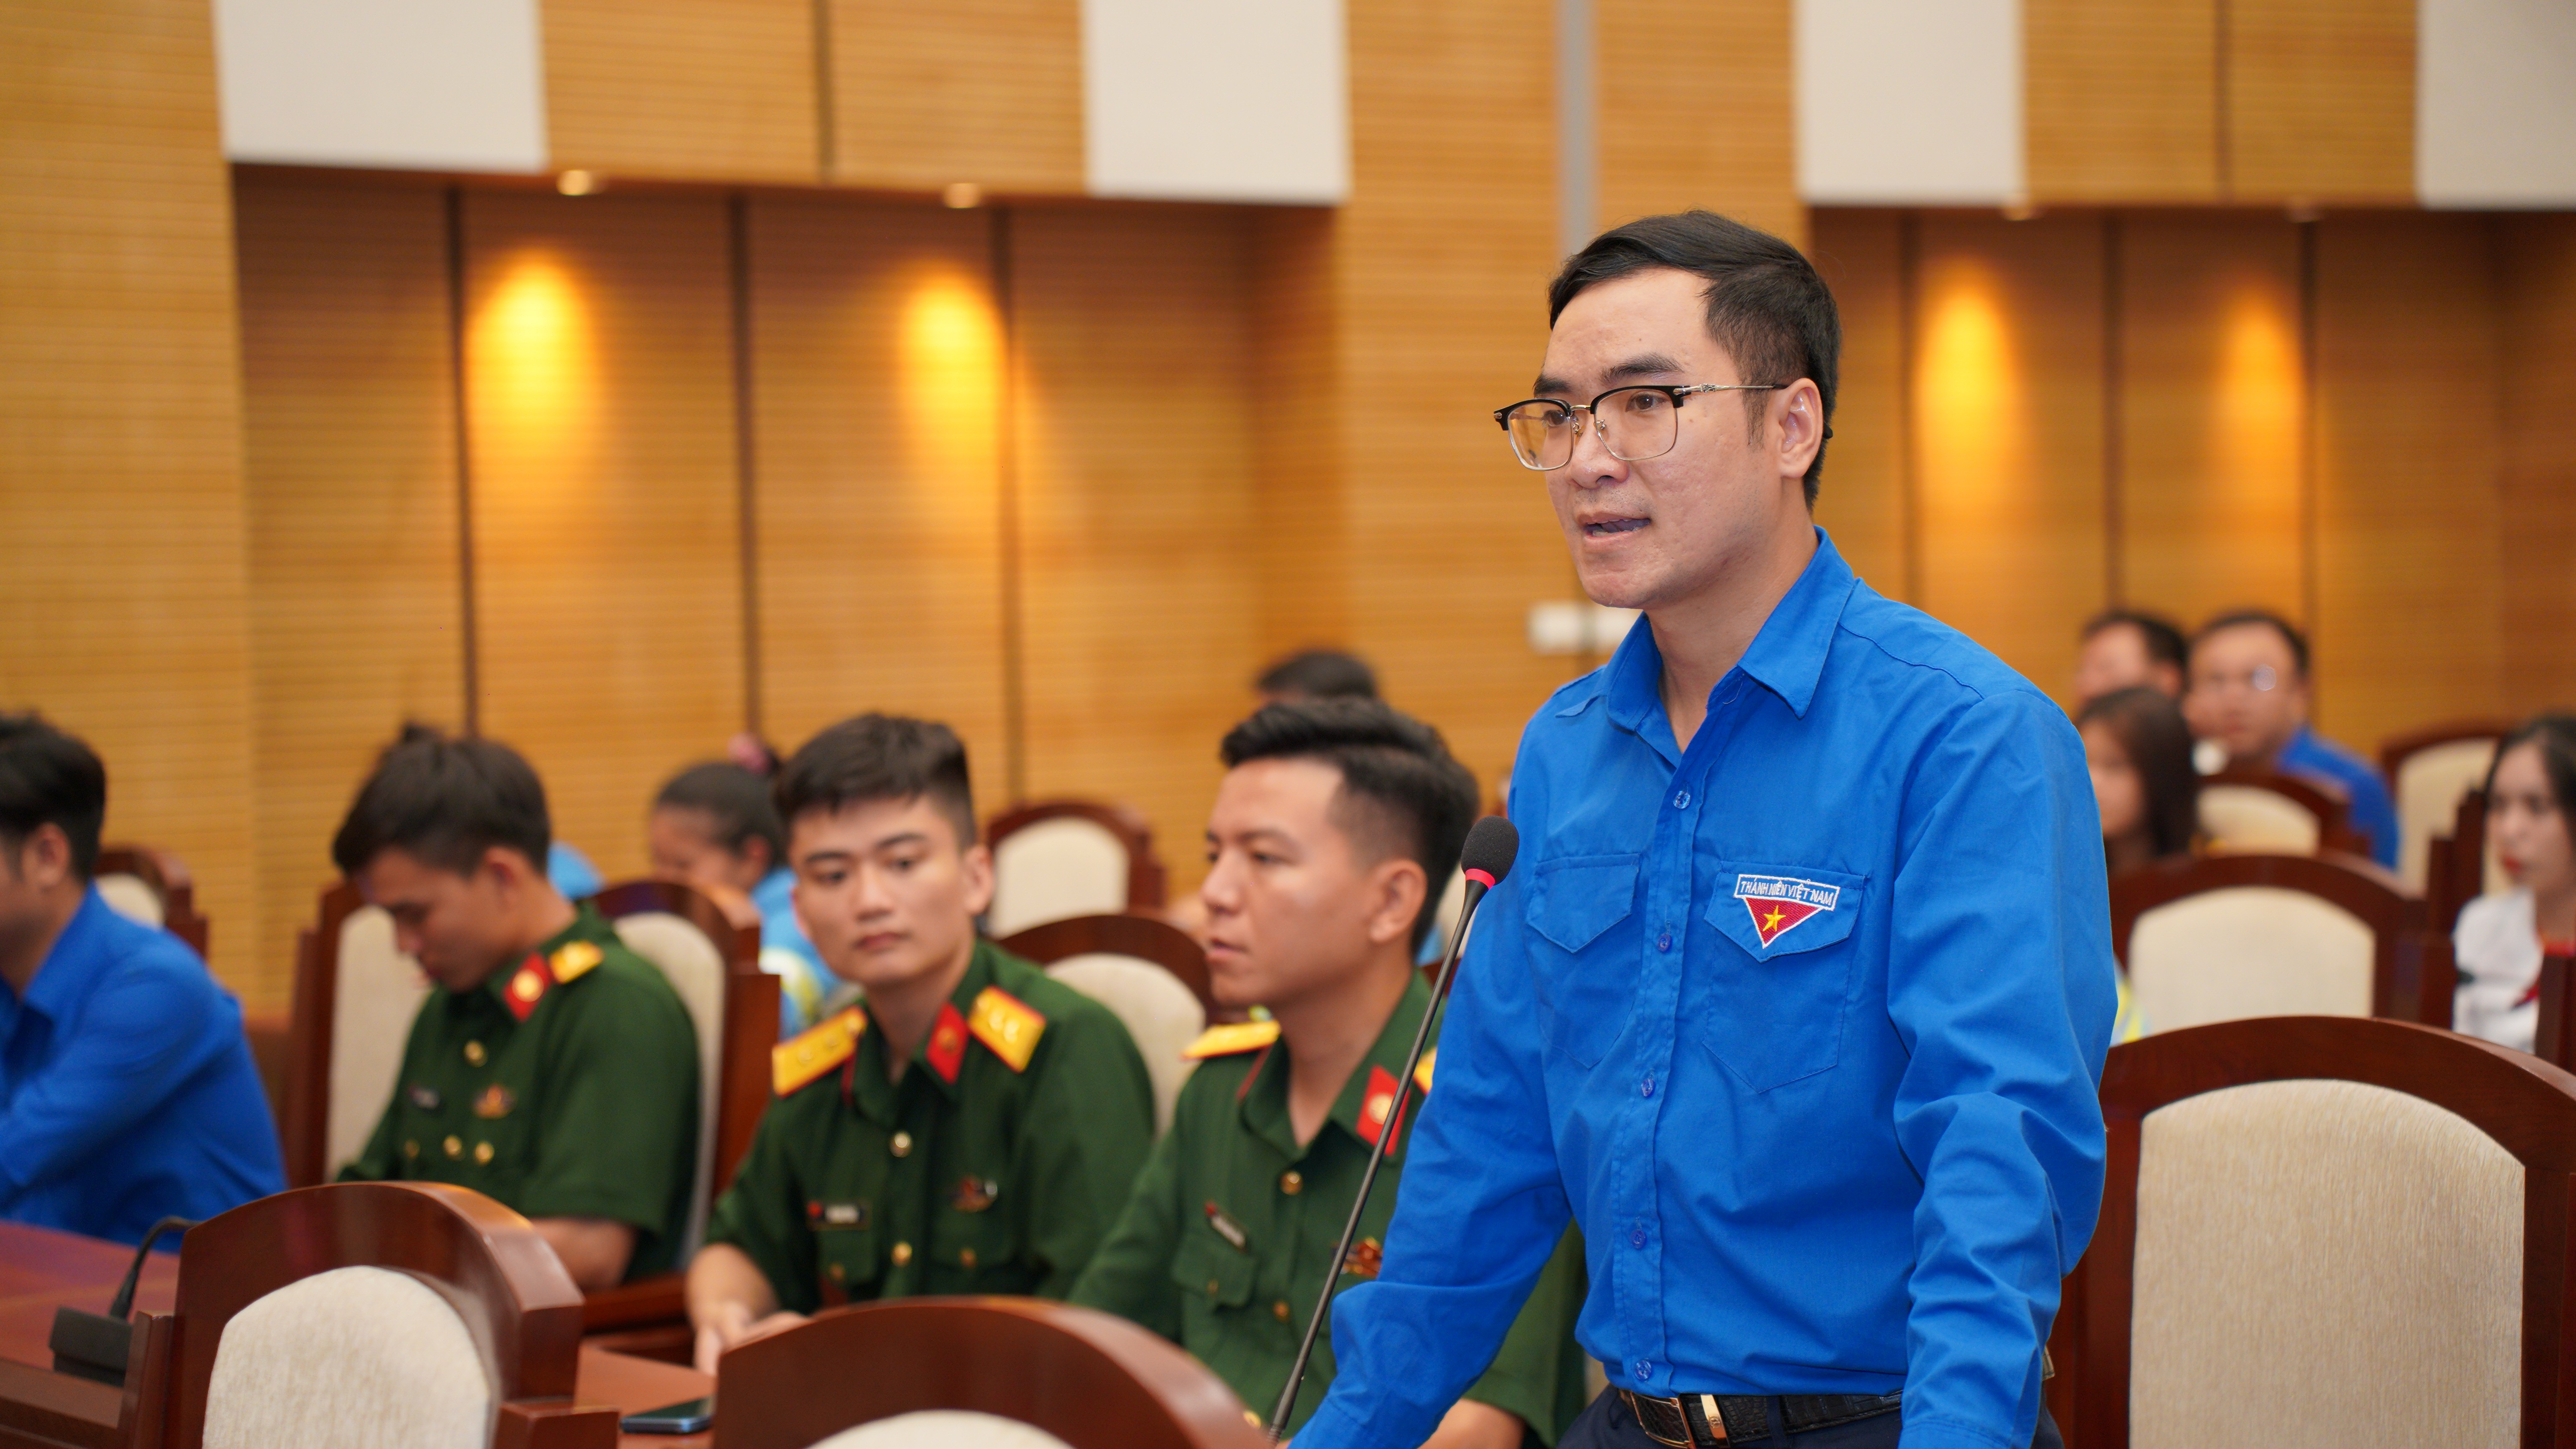 Đồng chí Phạm Minh Phúc, Trưởng ban Tuyên giáo Thành đoàn Hà Nội đặt câu hỏi tại buổi đối thoại